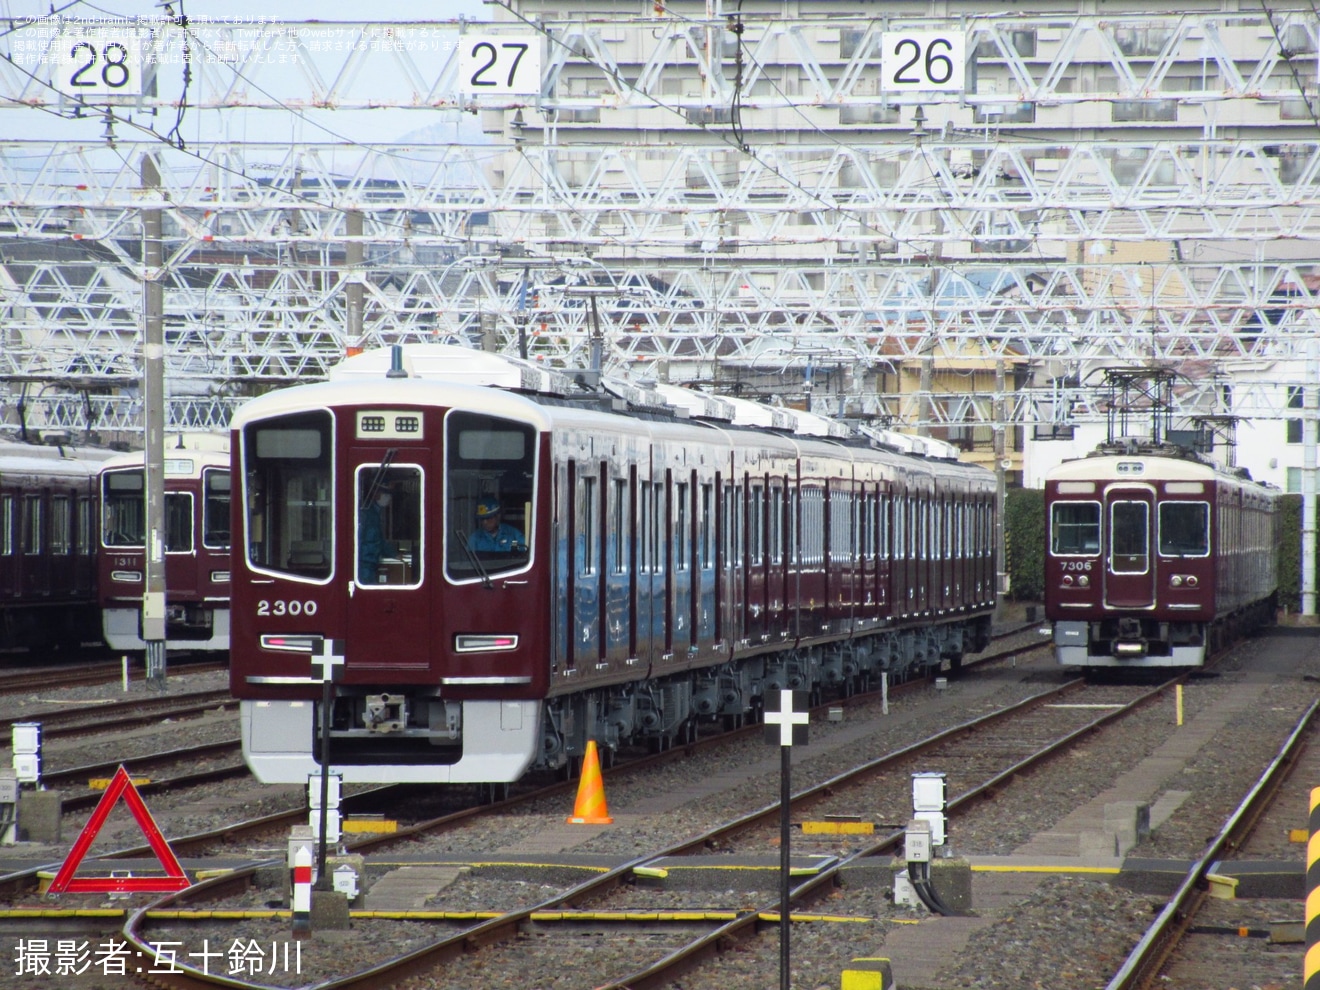 【阪急】2300系2300Fを使用した試験の拡大写真